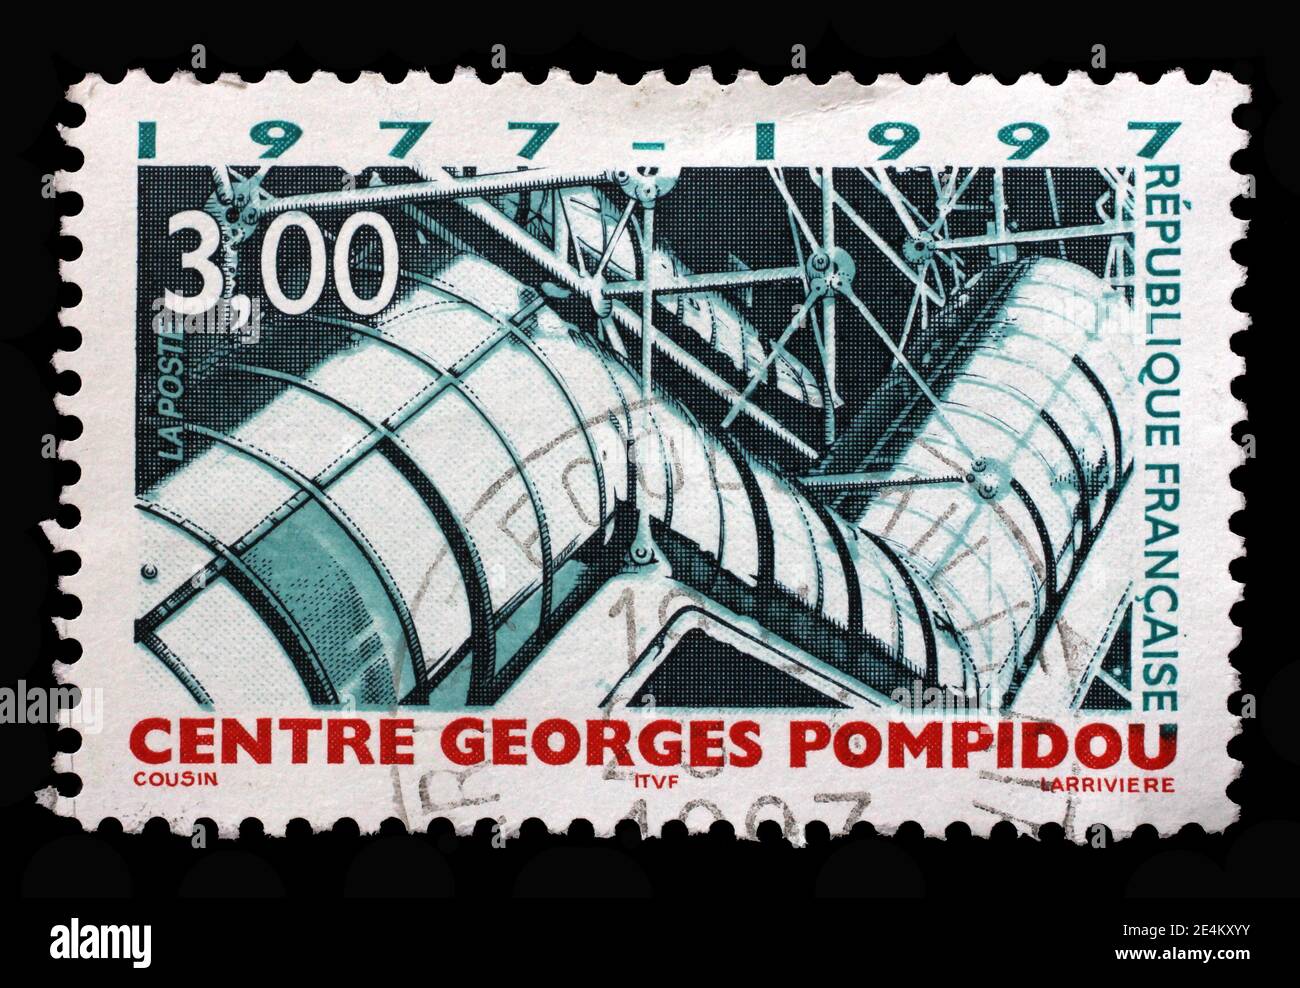 Die in Frankreich gedruckte Briefmarke zeigt Georges Pompidou National Centre of Art and Culture, 20th Anniversary, circa 1997 Stockfoto